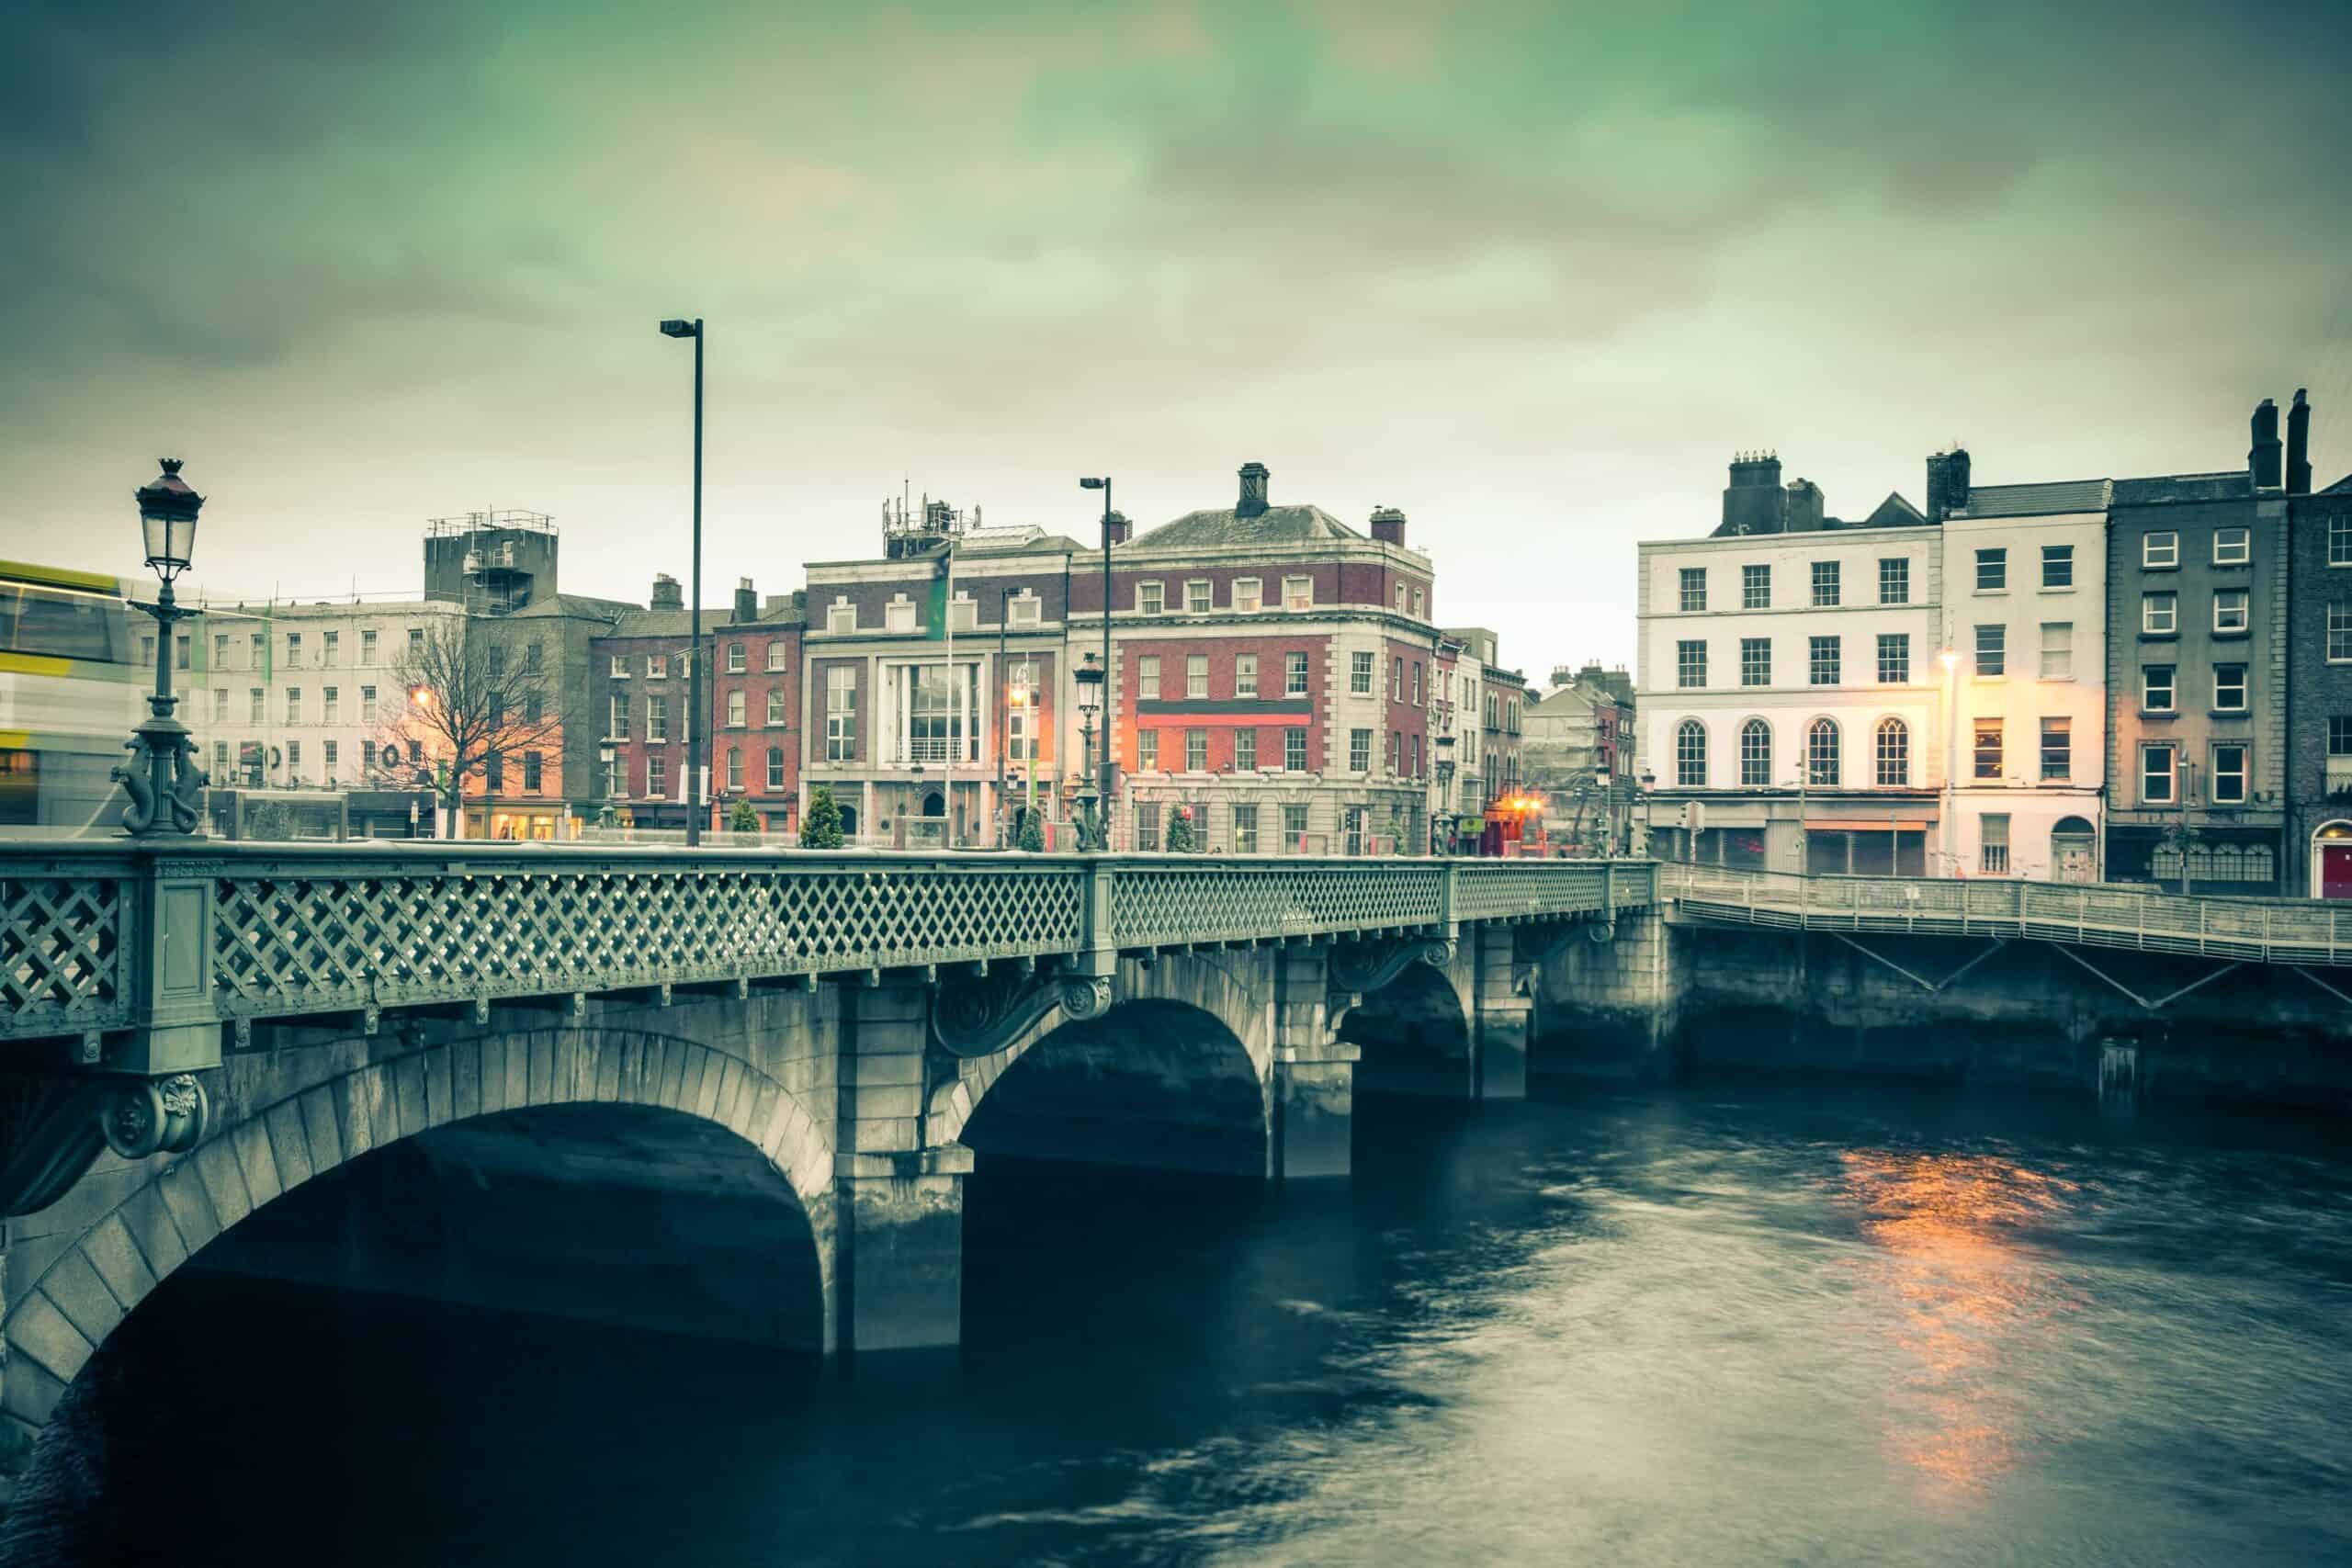 Дублин. Мост Граттан, Дублин. Ирландия Дублин. James Joyce "Dubliners". Великобритания Дублин.